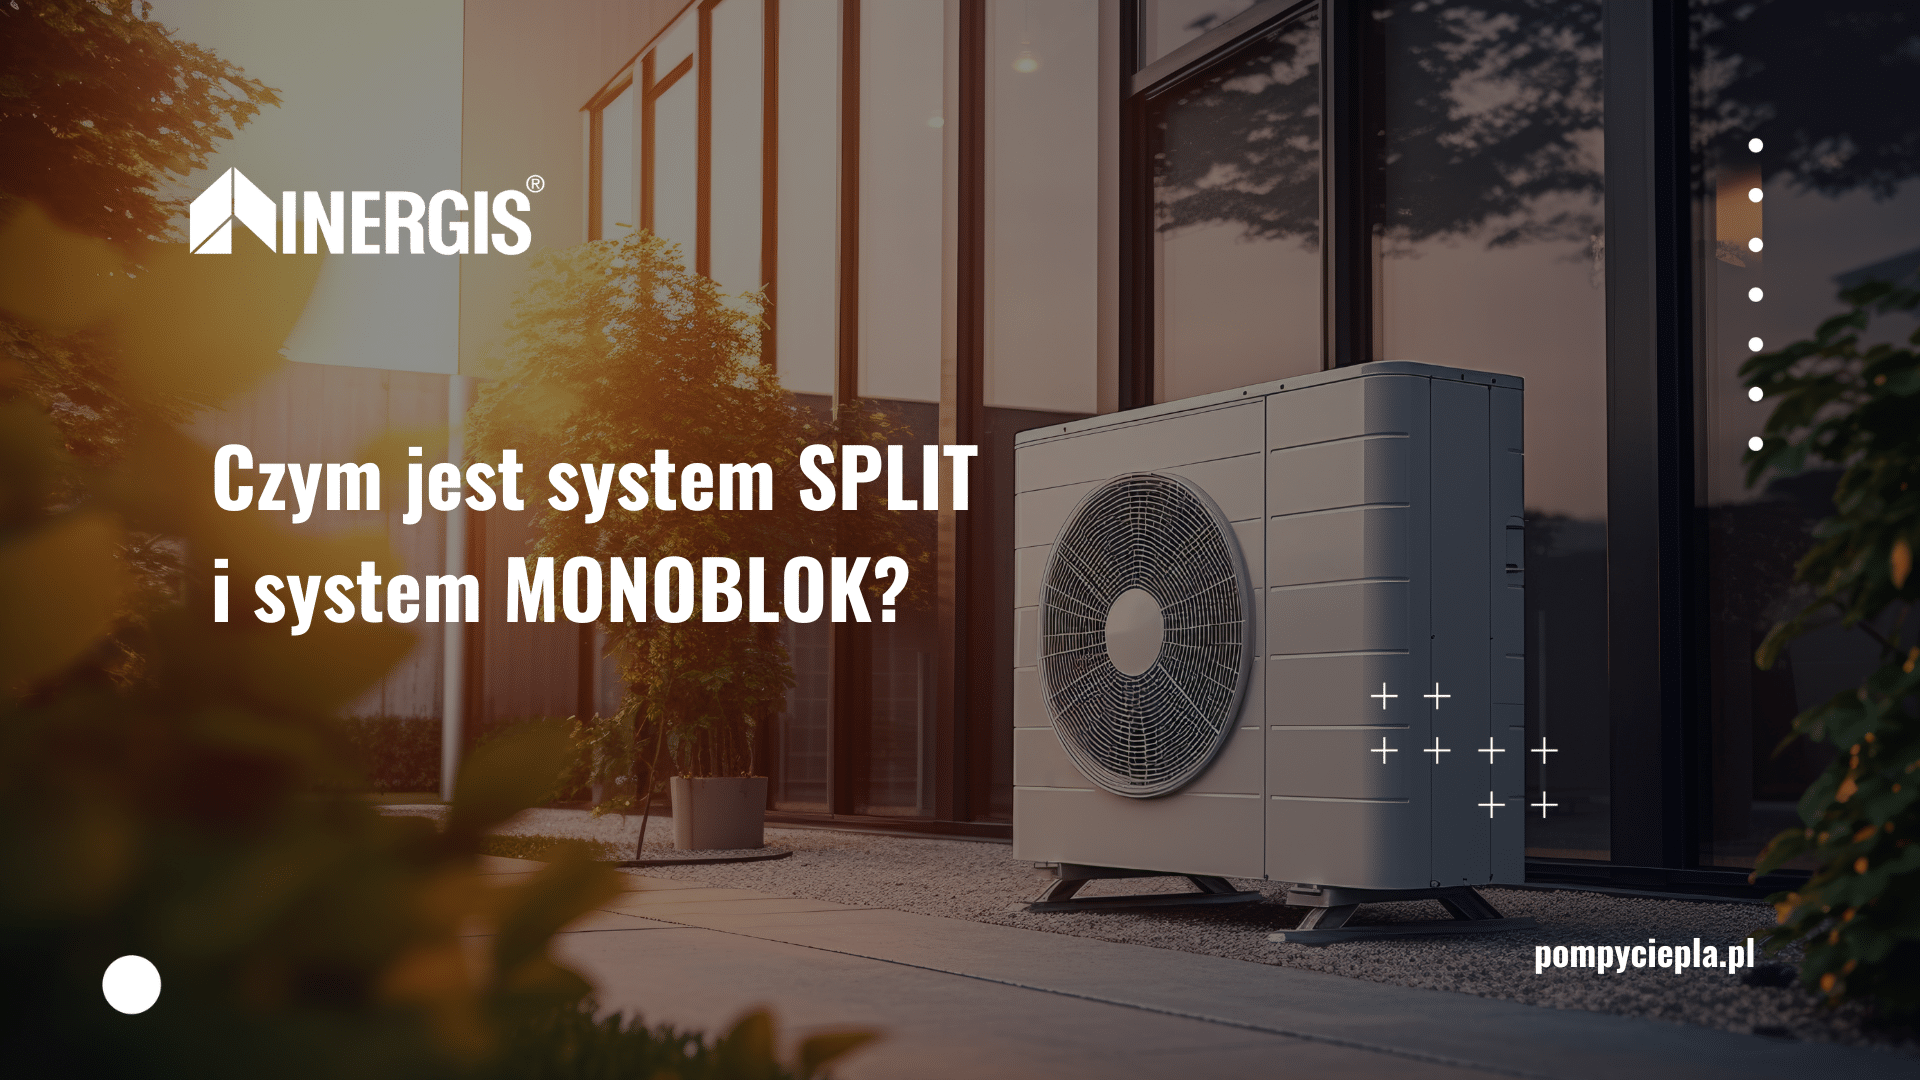 Czym jest system split i system monoblok